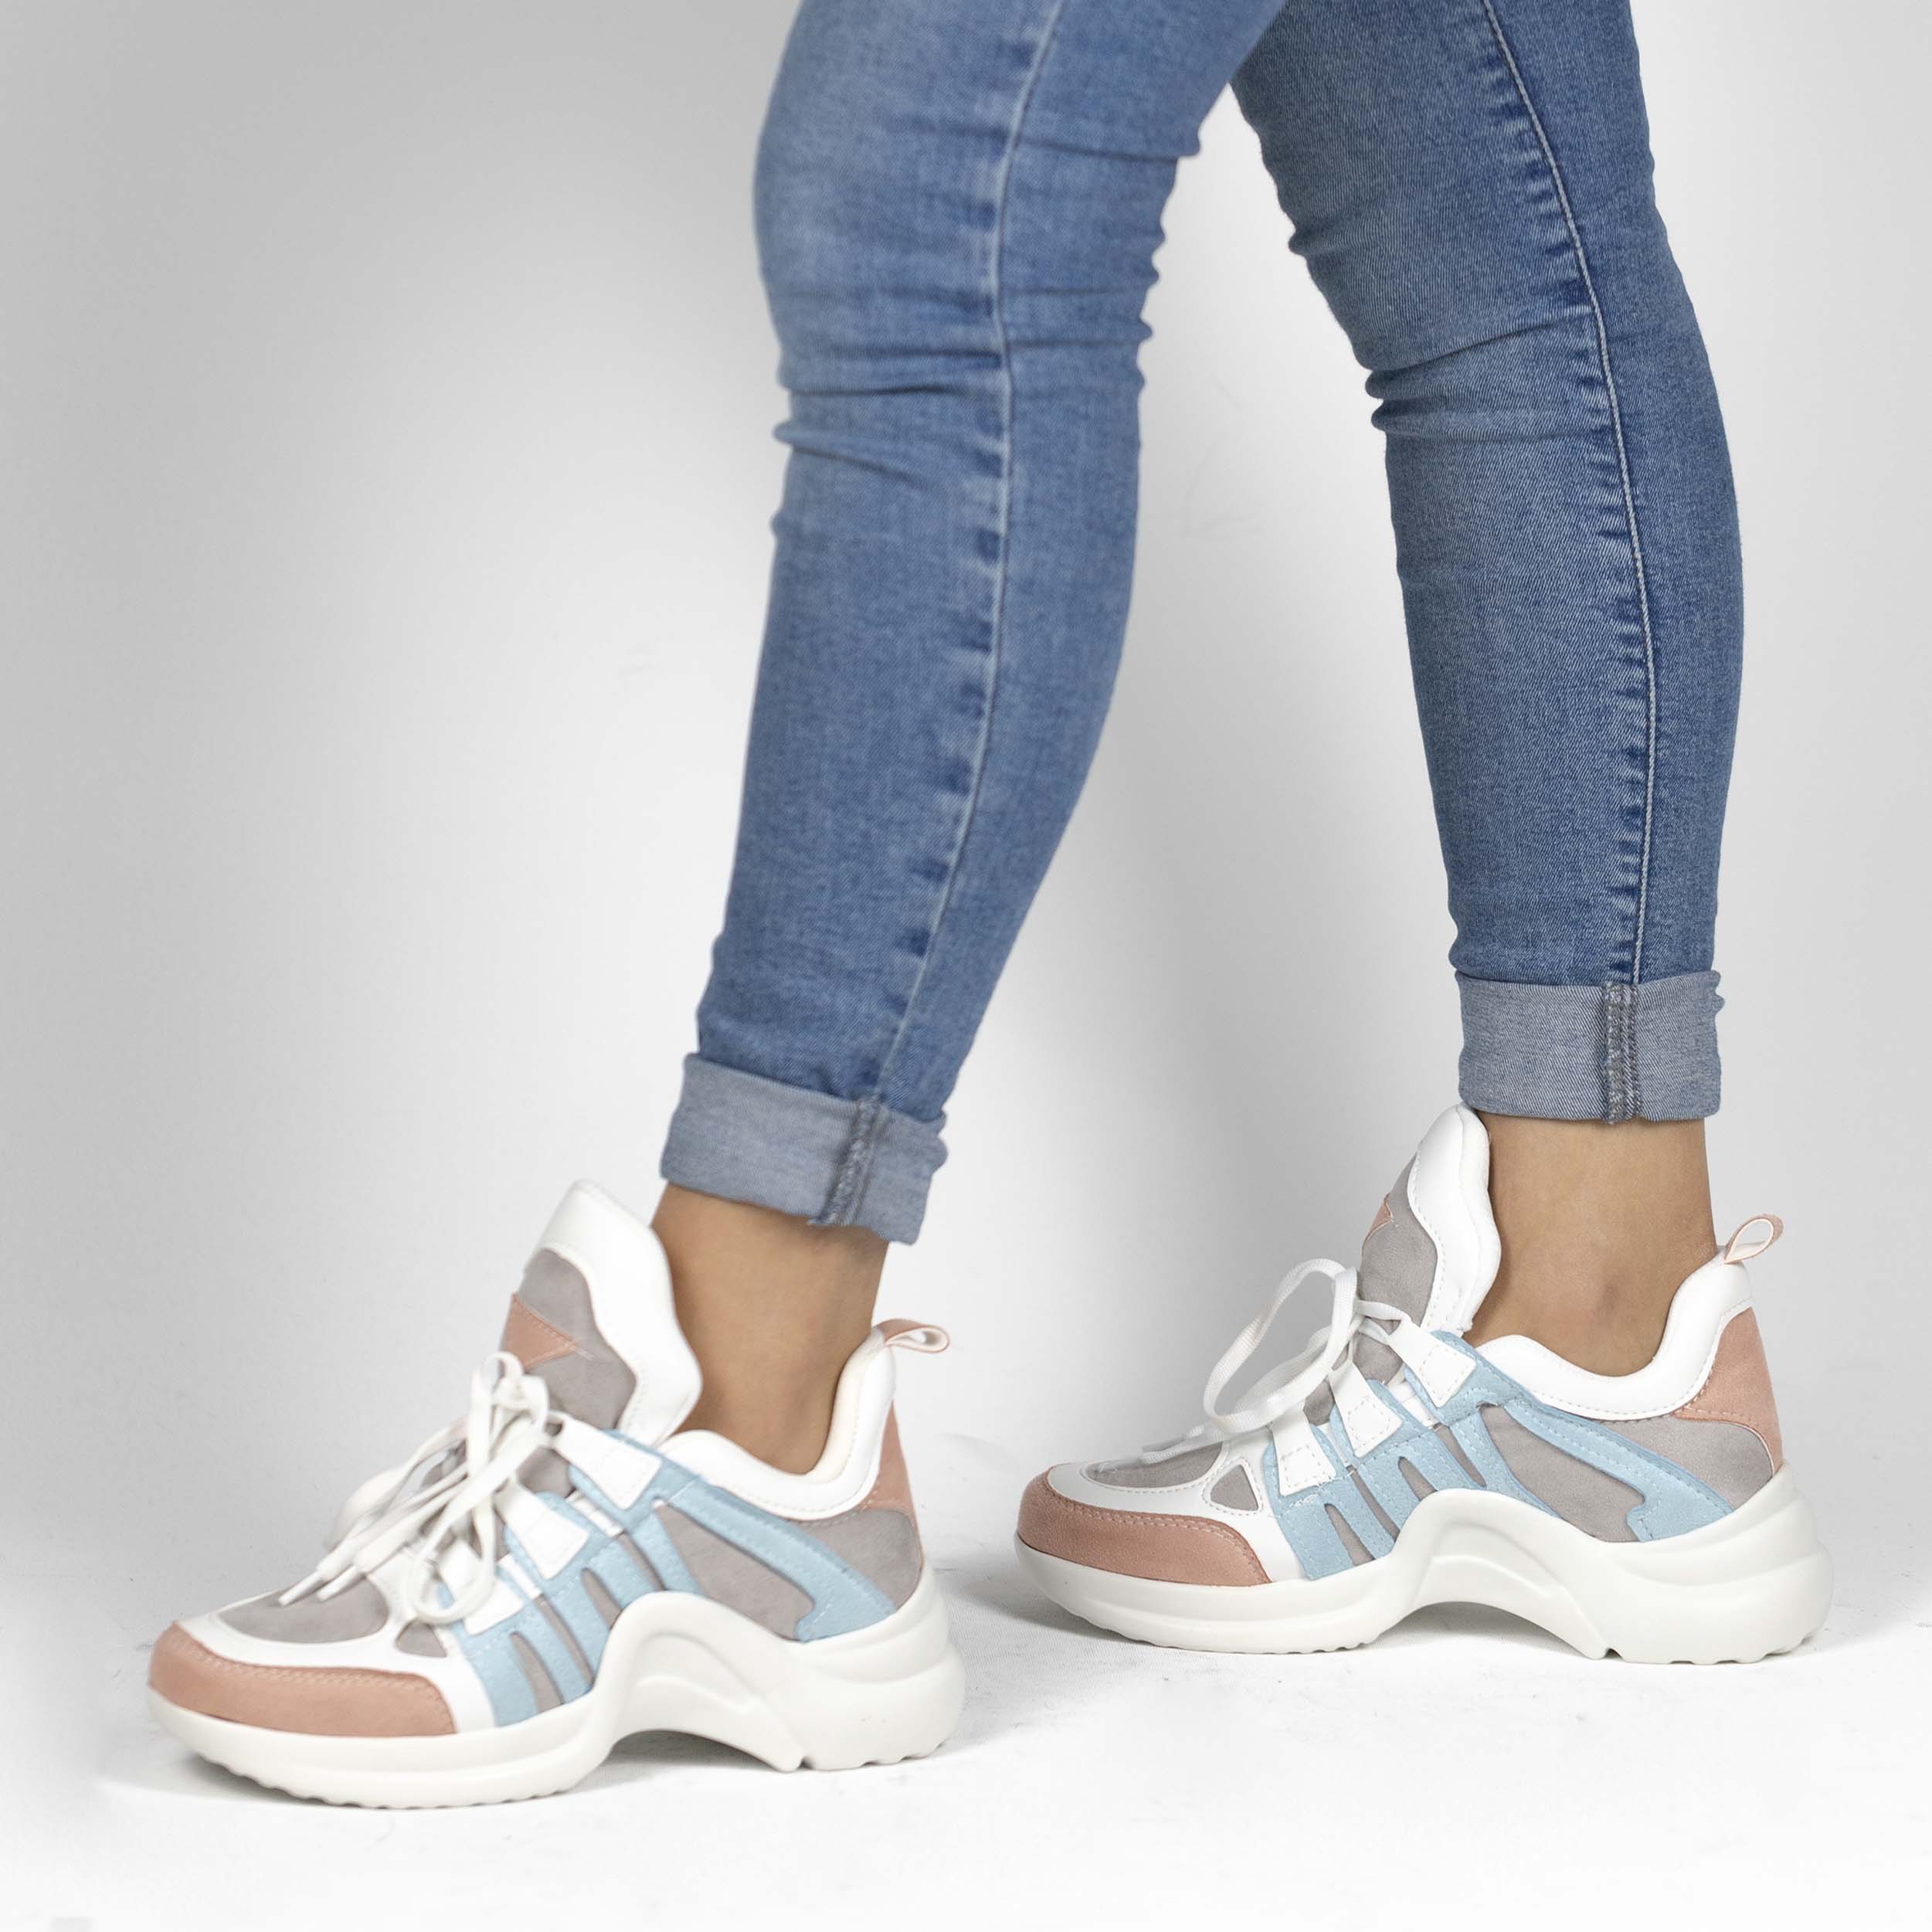 Kadın Kalın Tabanlı Spor Günlük Renkli Sneakers Ayakkabı, Renk: Beyaz - Mavi, Beden: 39